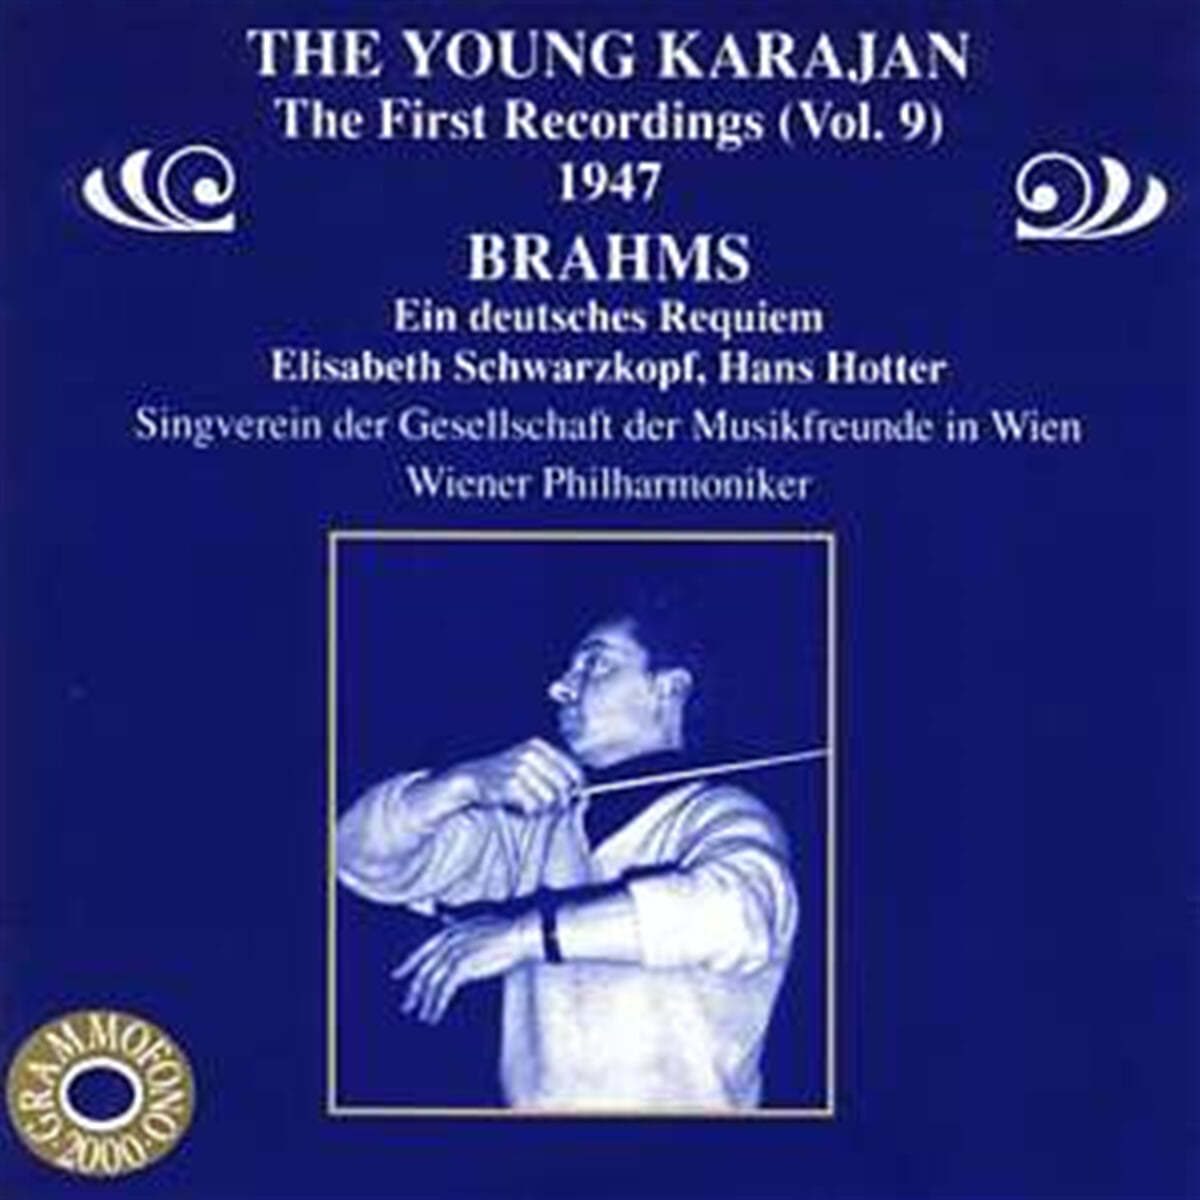 Herbert von Karajan 브람스: 독일 레퀴엠 (Brahms: Ein Deutsches Requiem) 